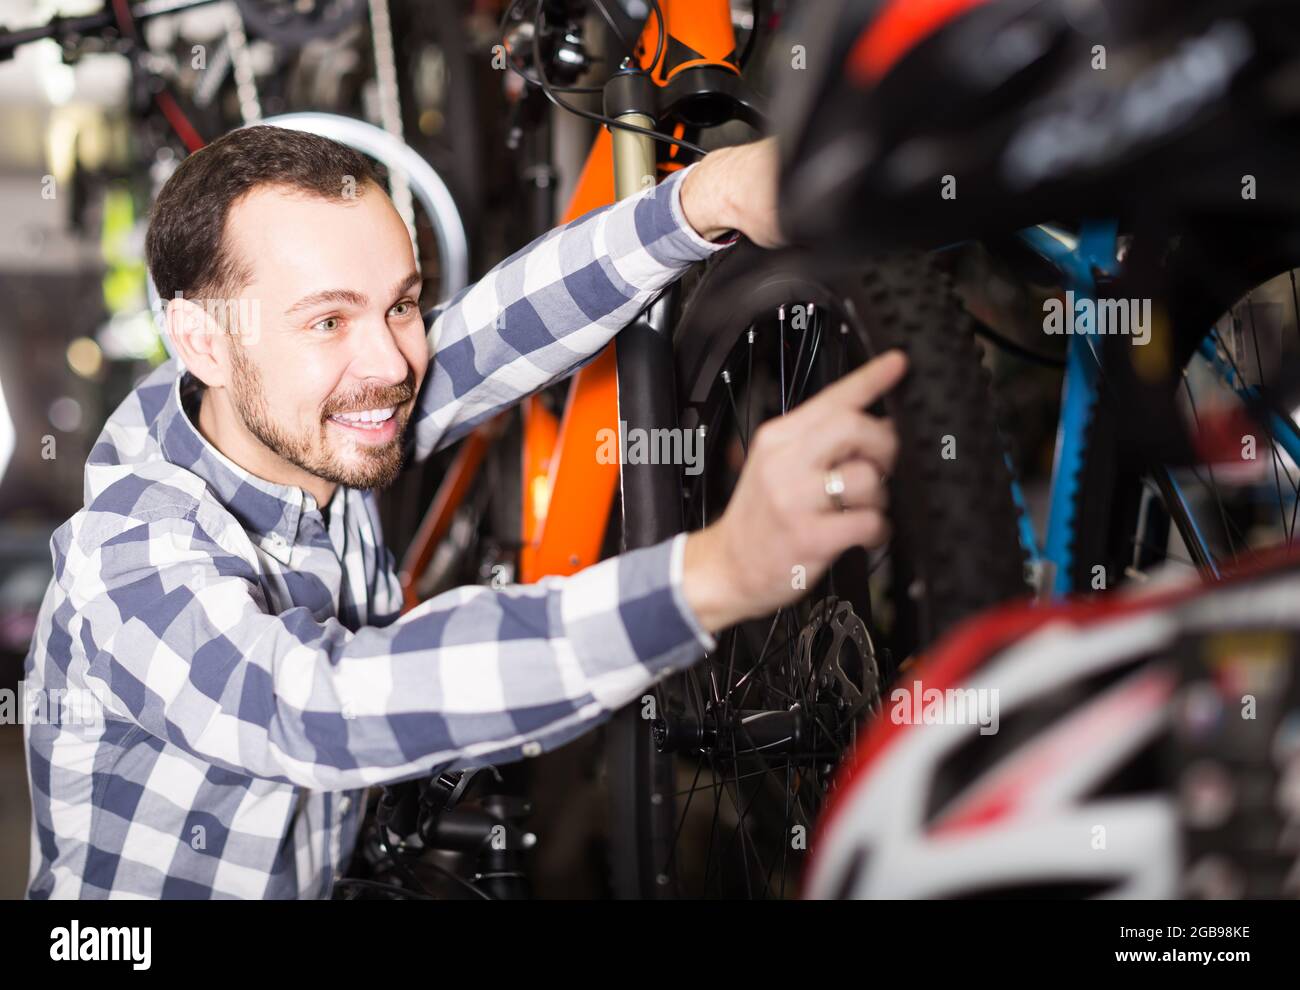 Fröhlicher Mann im Sportgeschäft behandelt Fahrräder und weist auf interessante Details hin Stockfoto